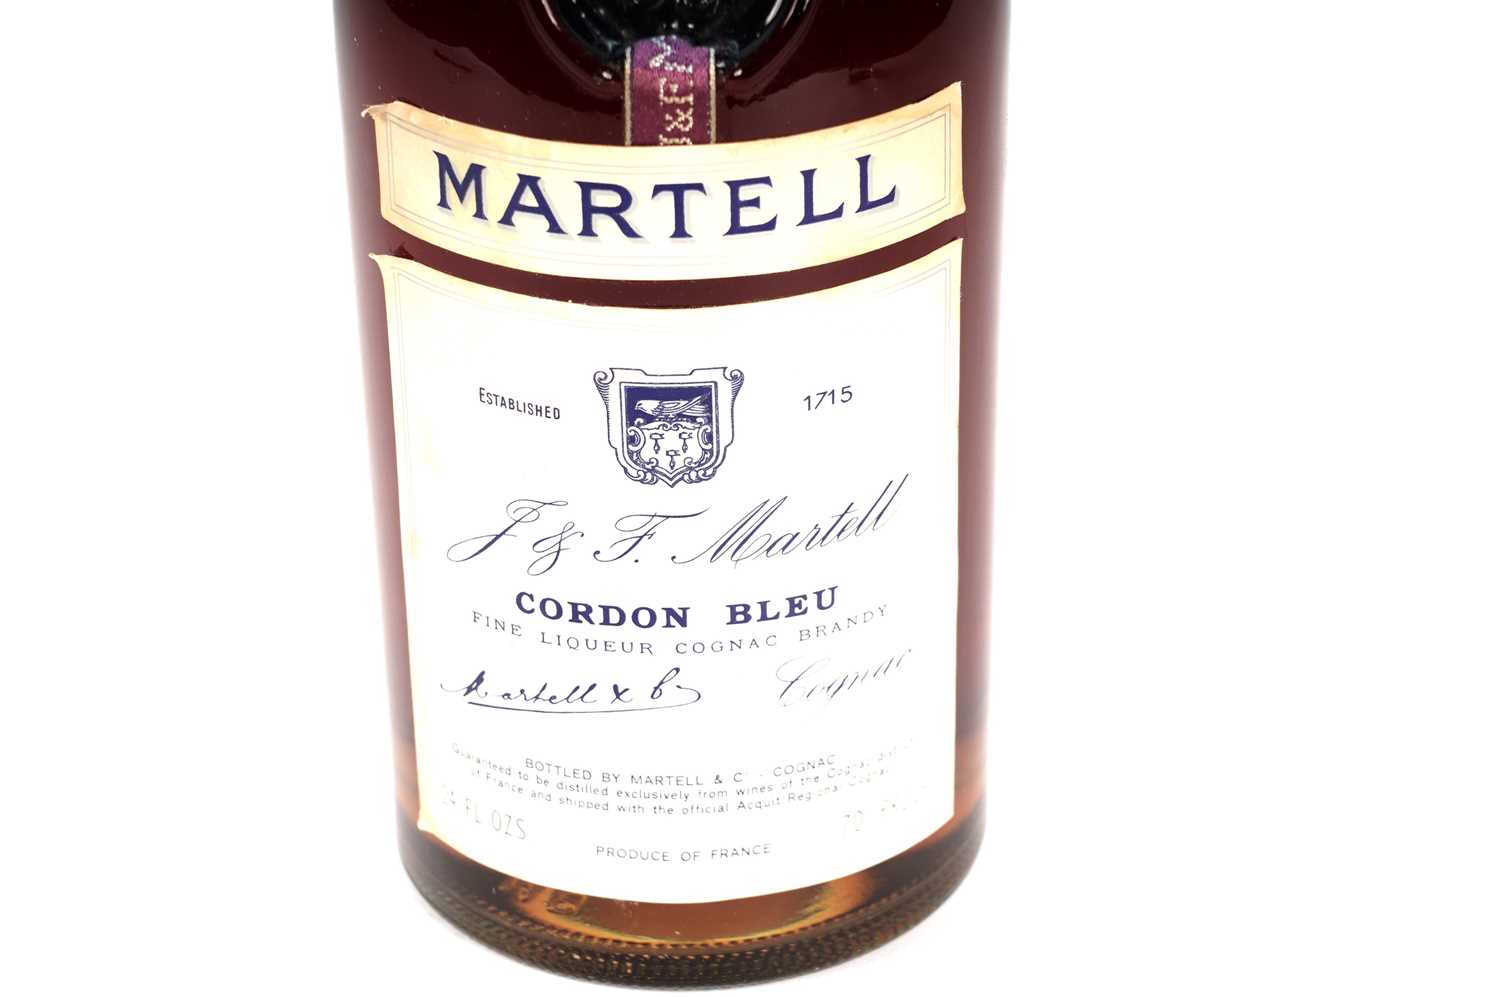 A bottle of Martell Cordon Bleu Fine Liqueur Cognac Brandy - Image 3 of 4